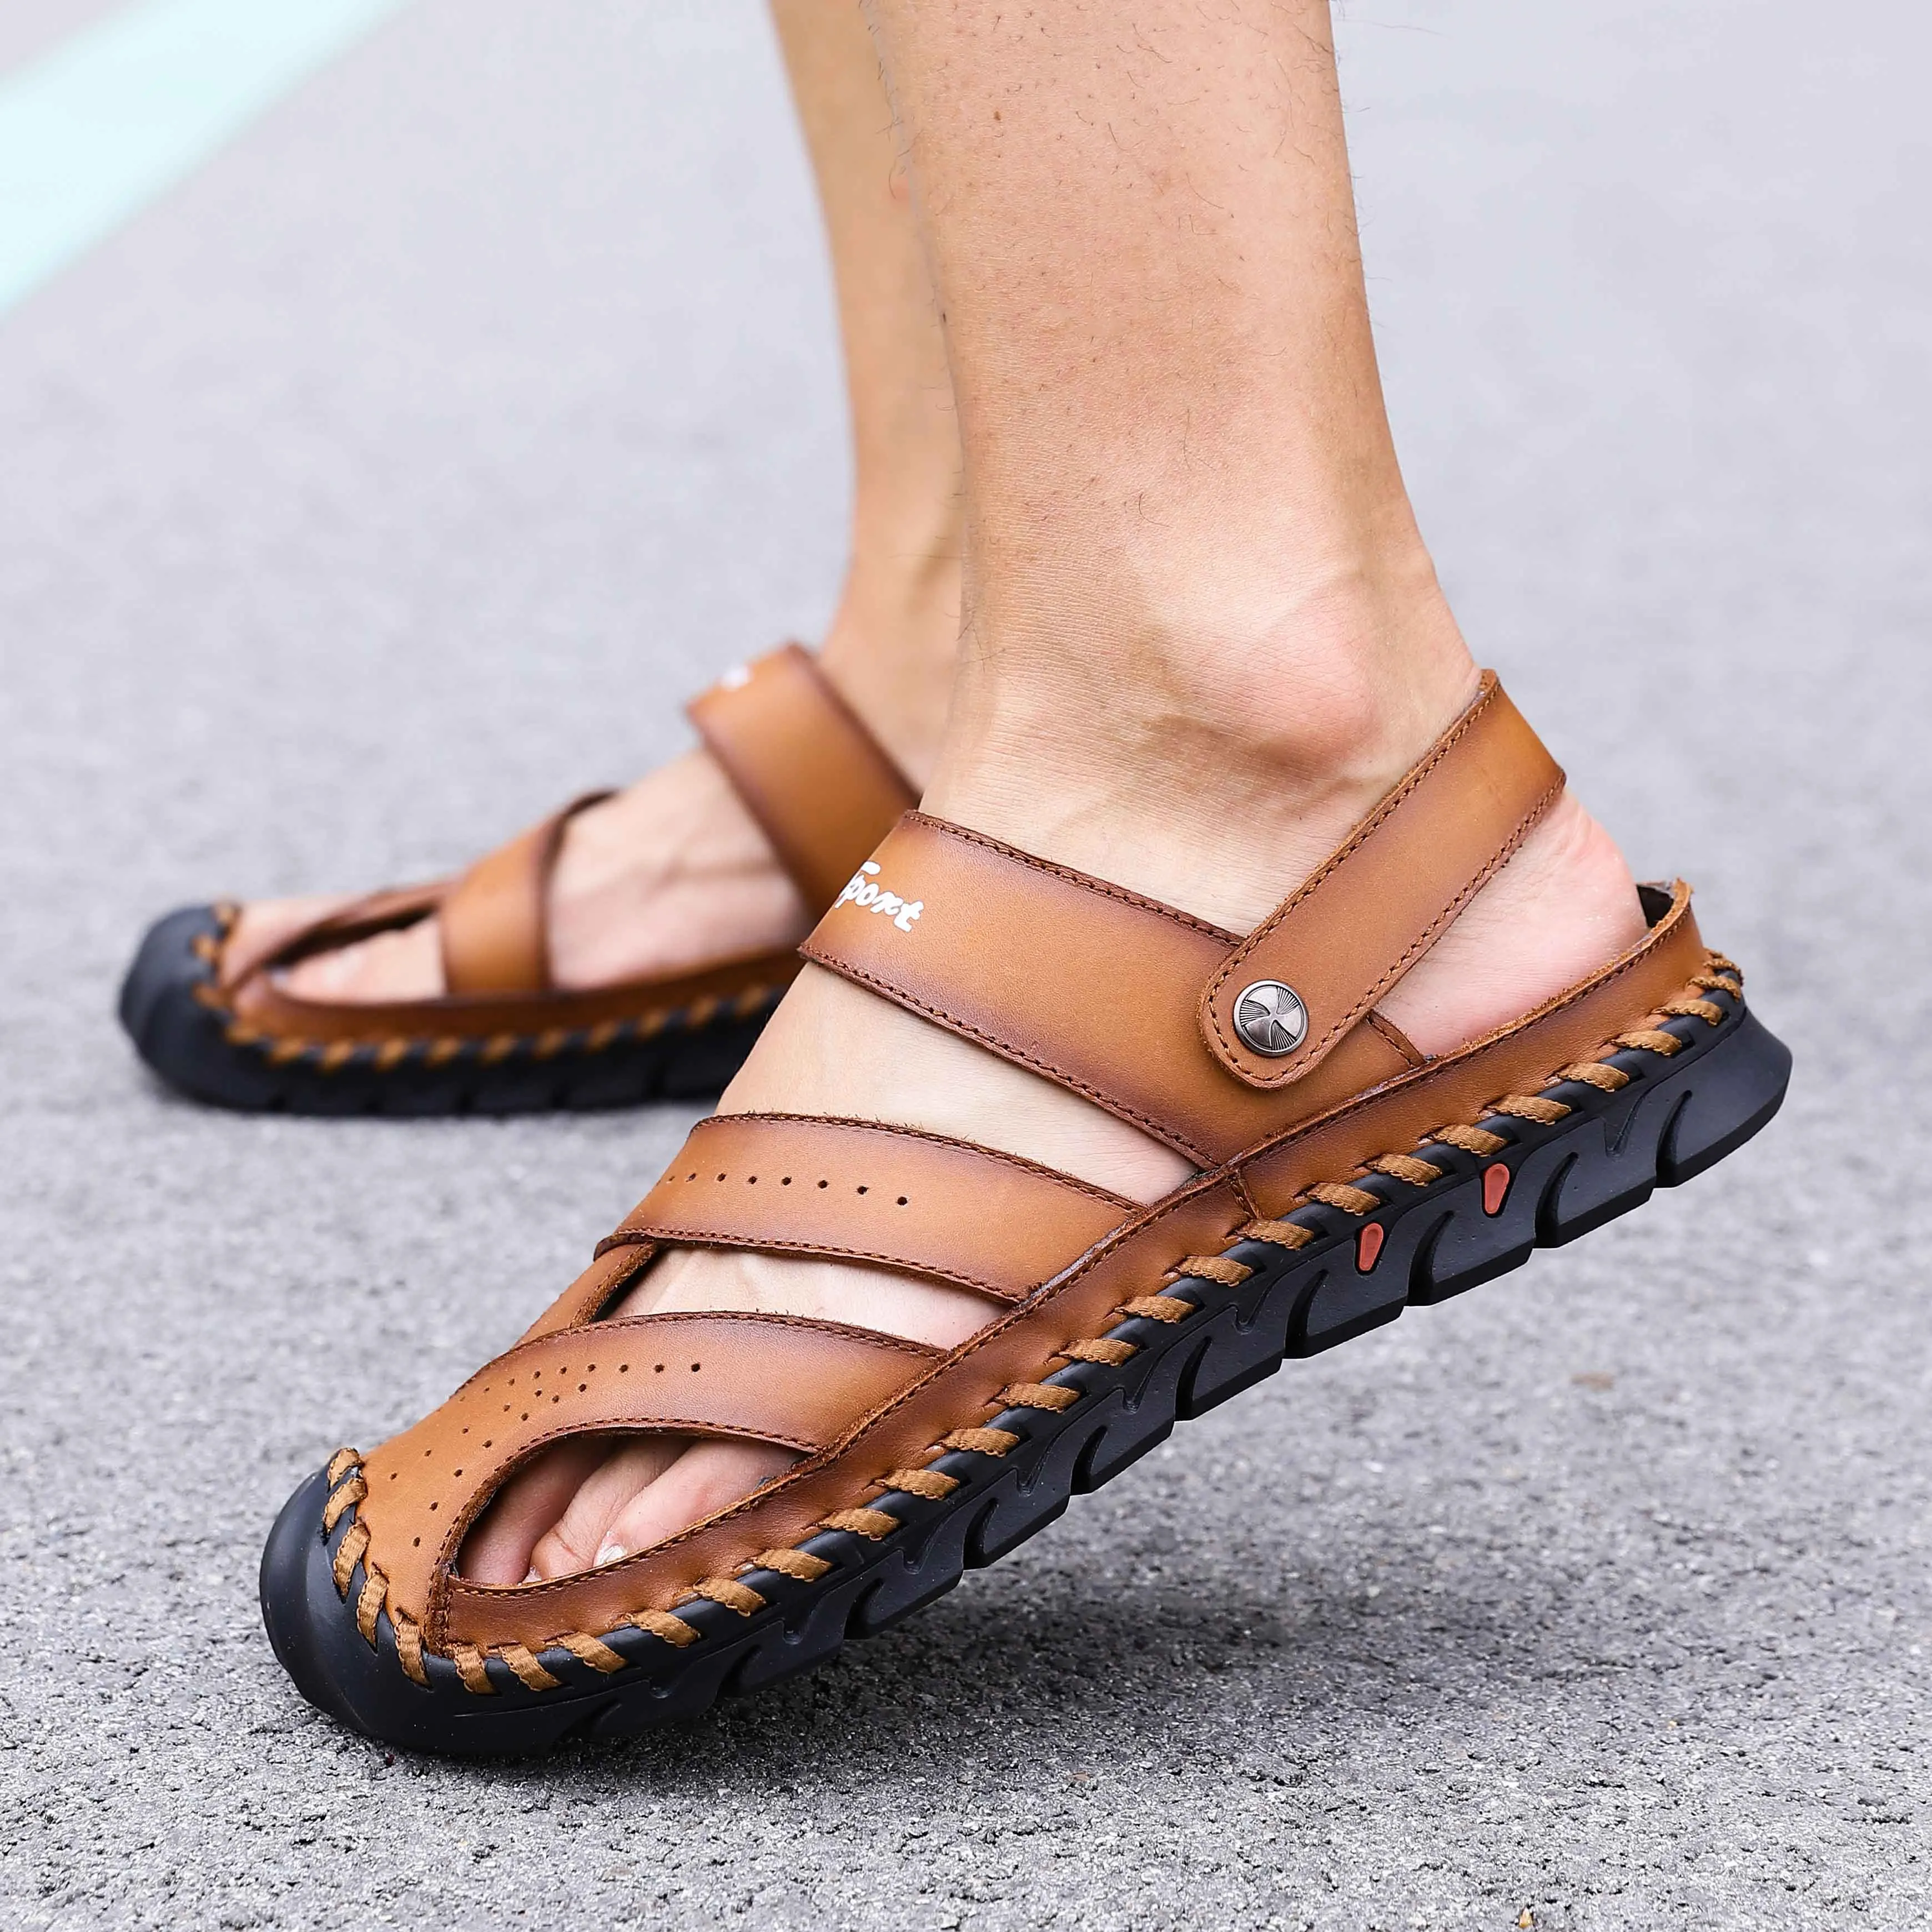 Мужские сандалии летние пояса из натуральной кожи открытый мужской сандалии, тапочки гладиаторы пляжные zapatillas hombre обувь большого разме